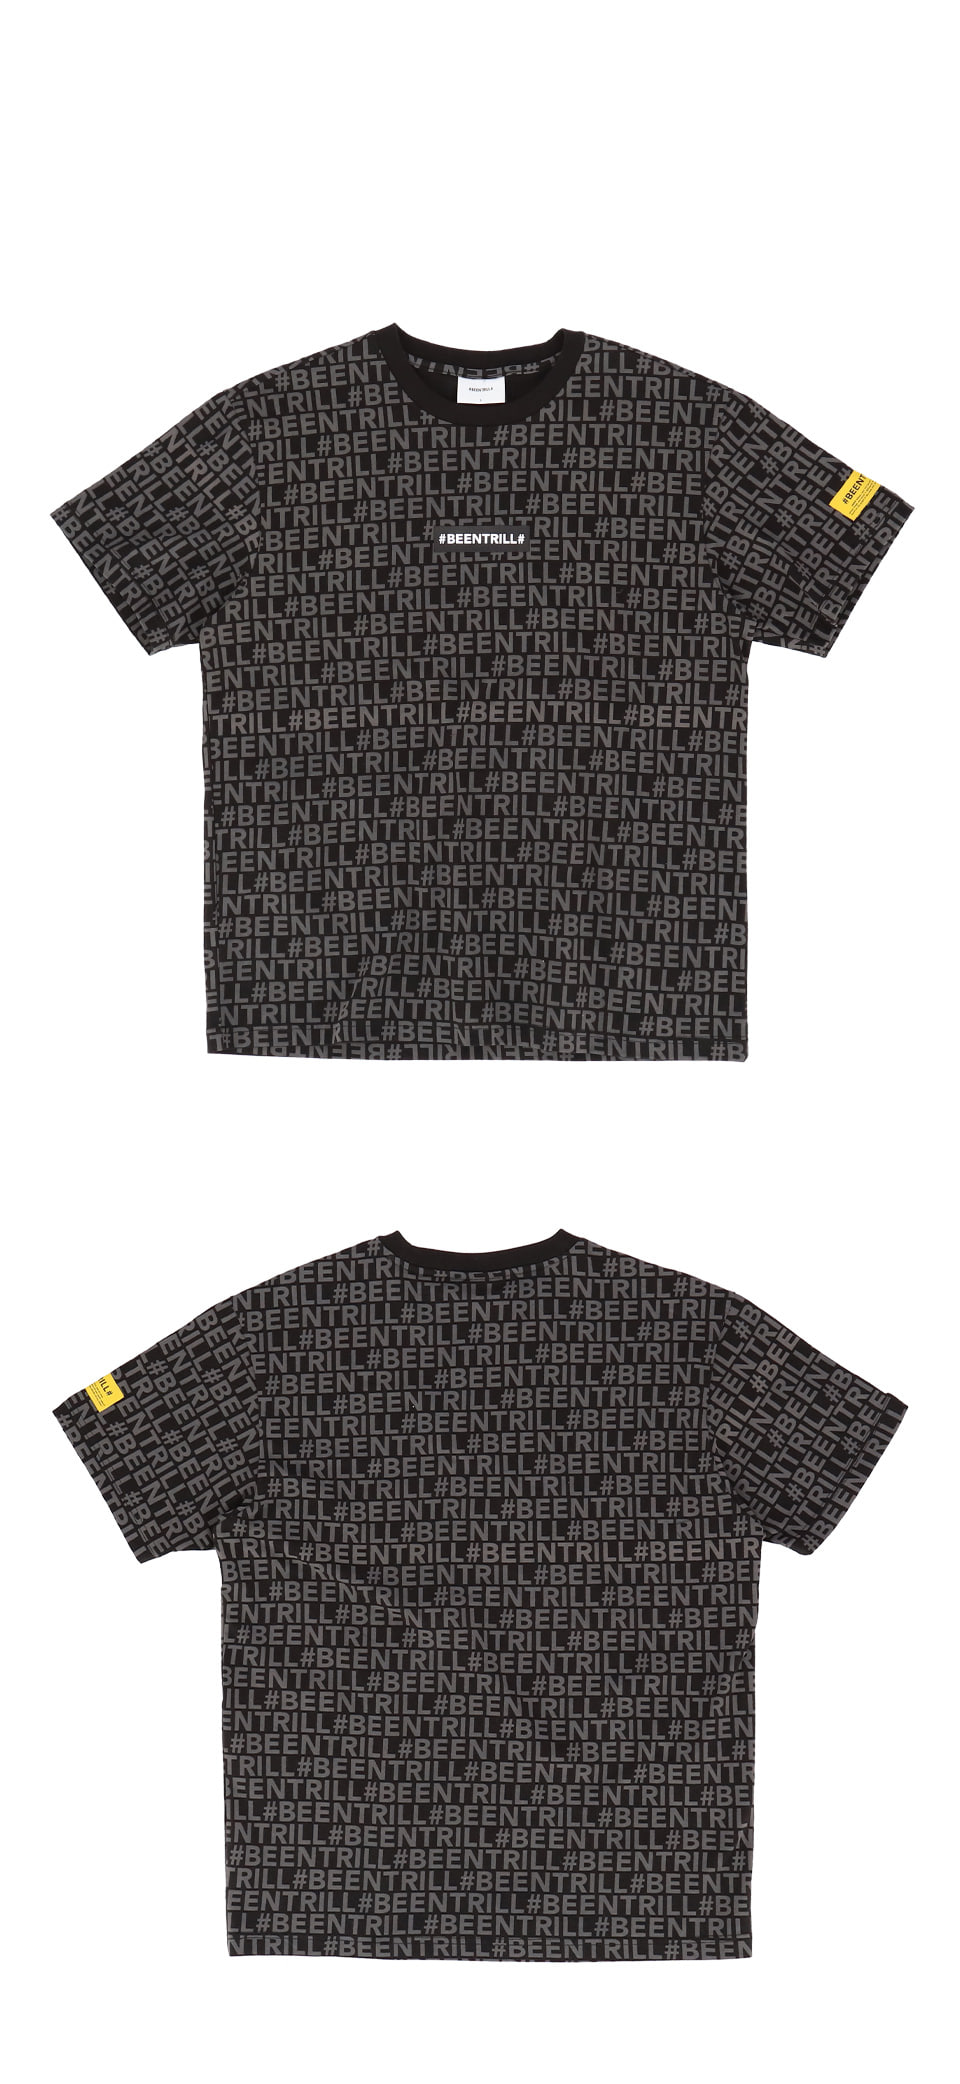 빈트릴(BEENTRILL) 모노그램 컴포트핏 반팔 티셔츠(블랙)